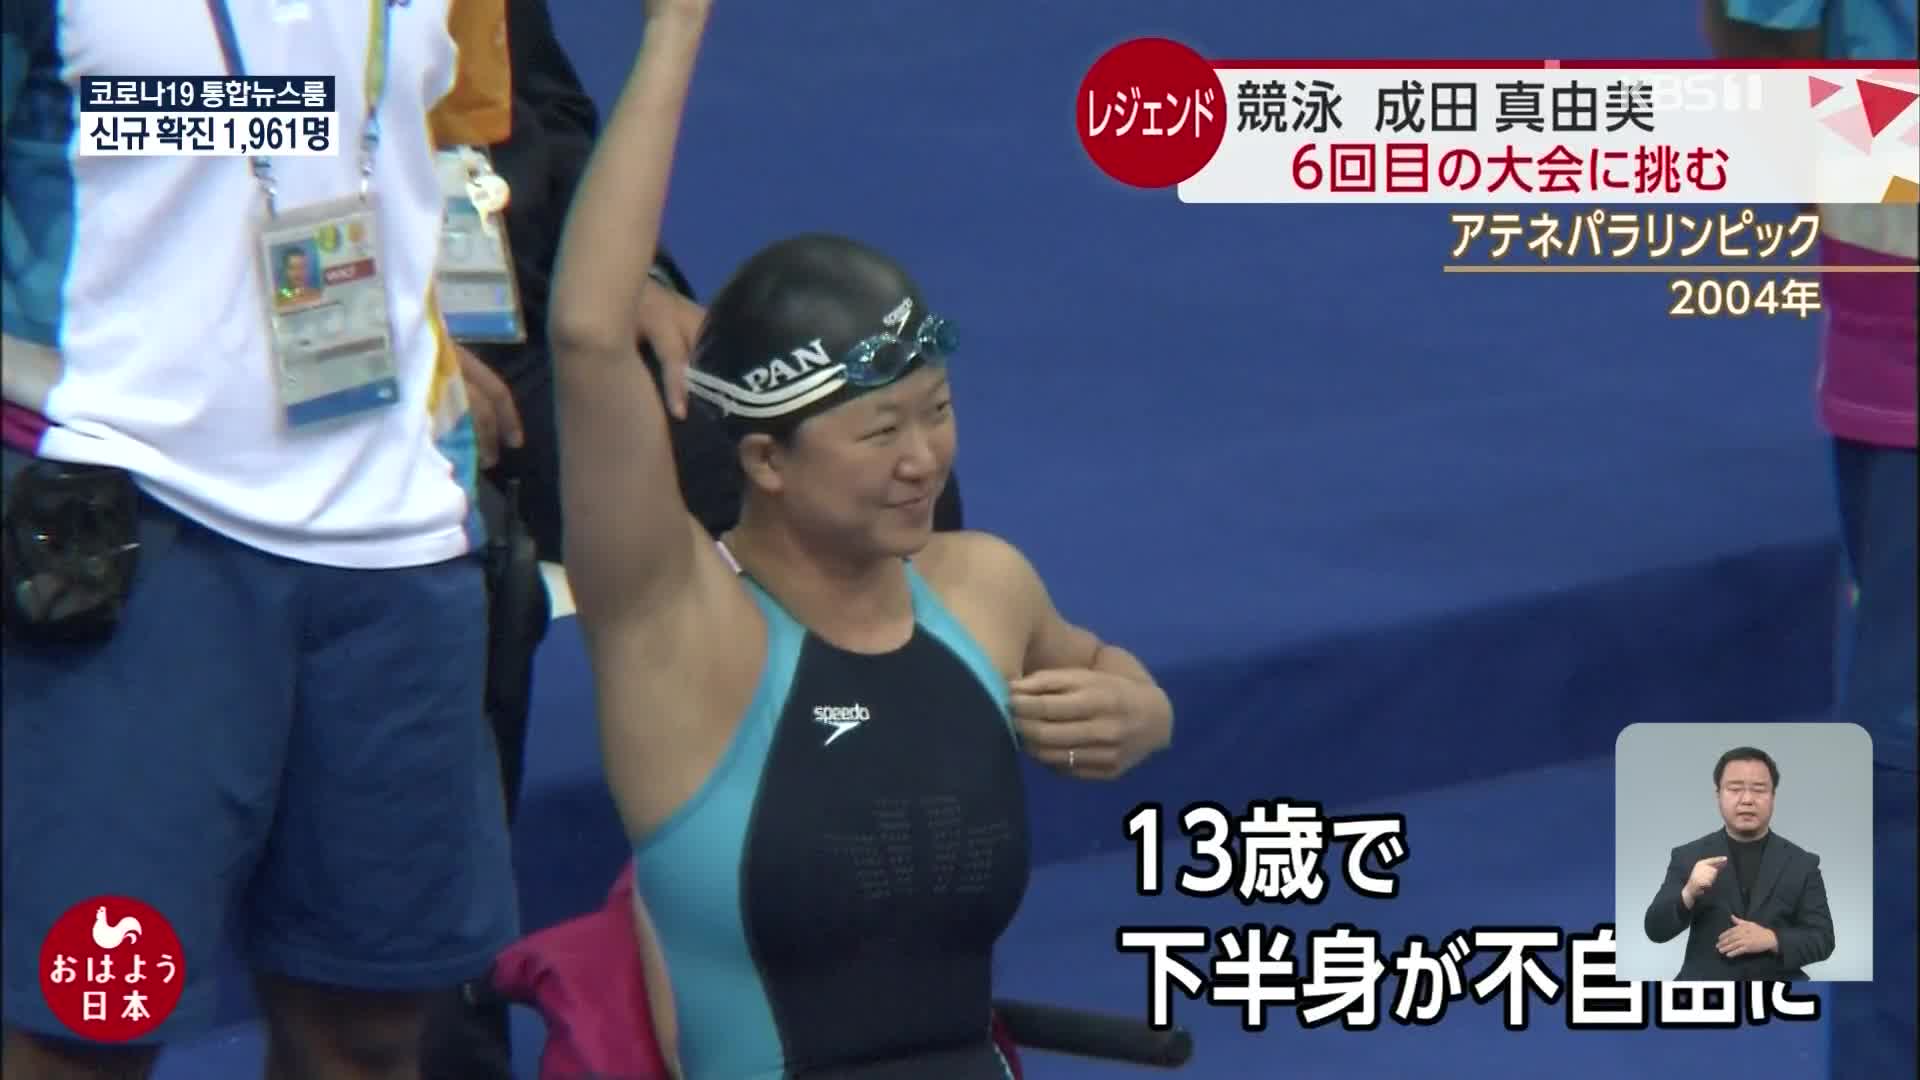 일본, 25년간 선수 생활 마감한 50대 수영선수